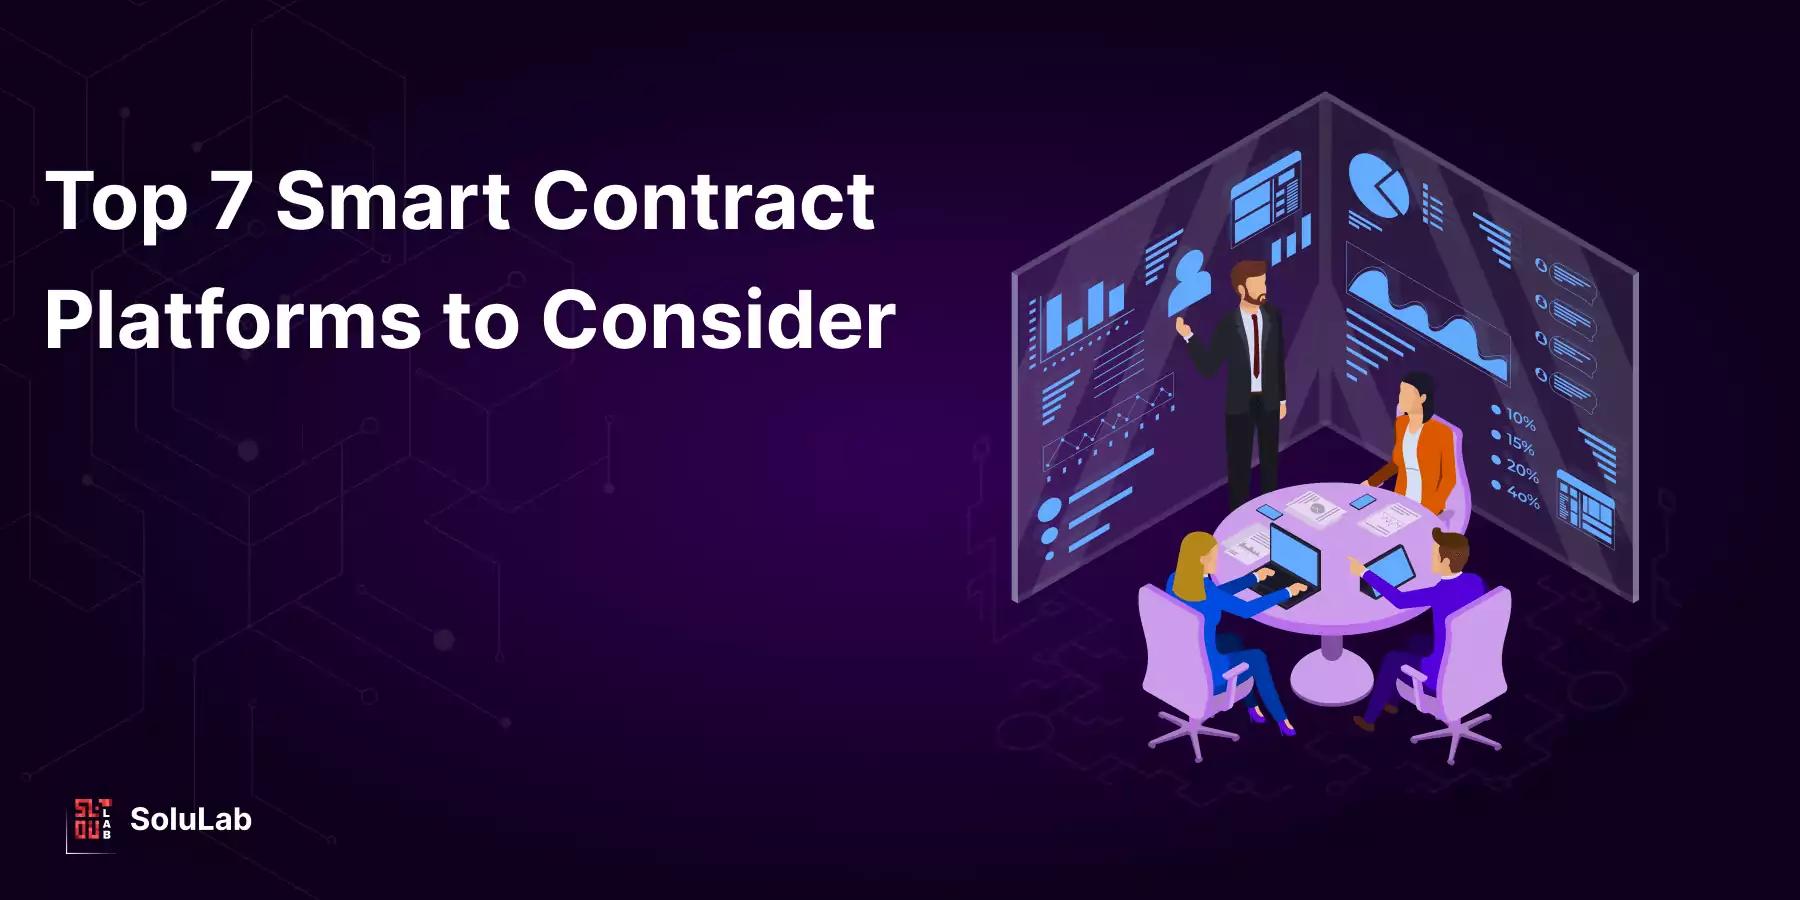 plataforma de contratos inteligentes - Qué plataforma es mejor para contratos inteligentes